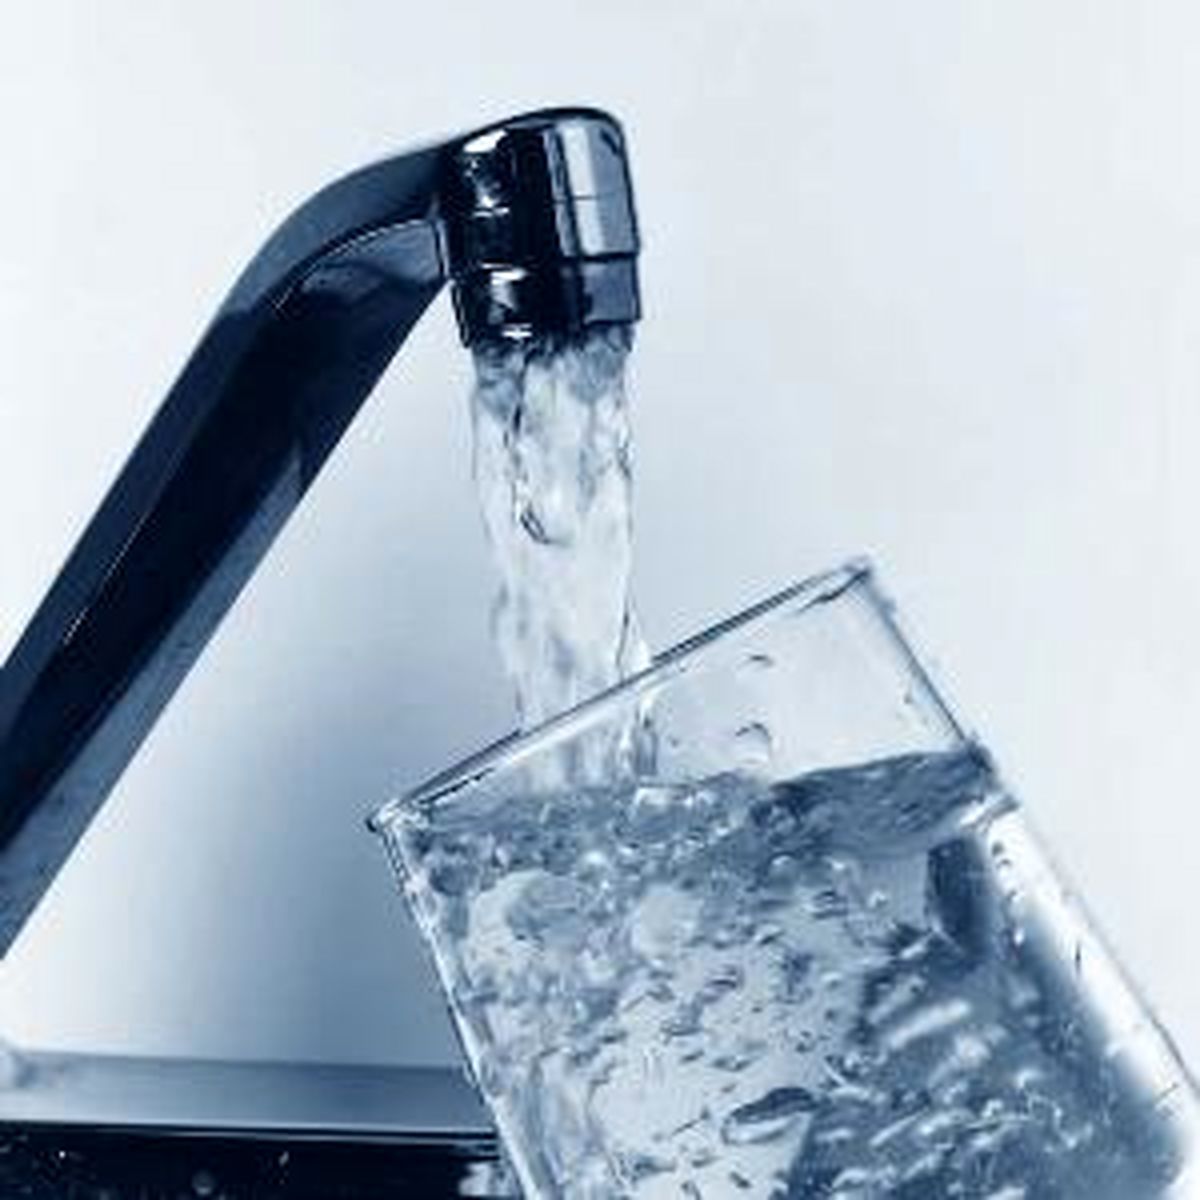 مدیرعامل آب و فاضلاب تهران: آب شرب تهران هیچگونه مشکلی ندارد